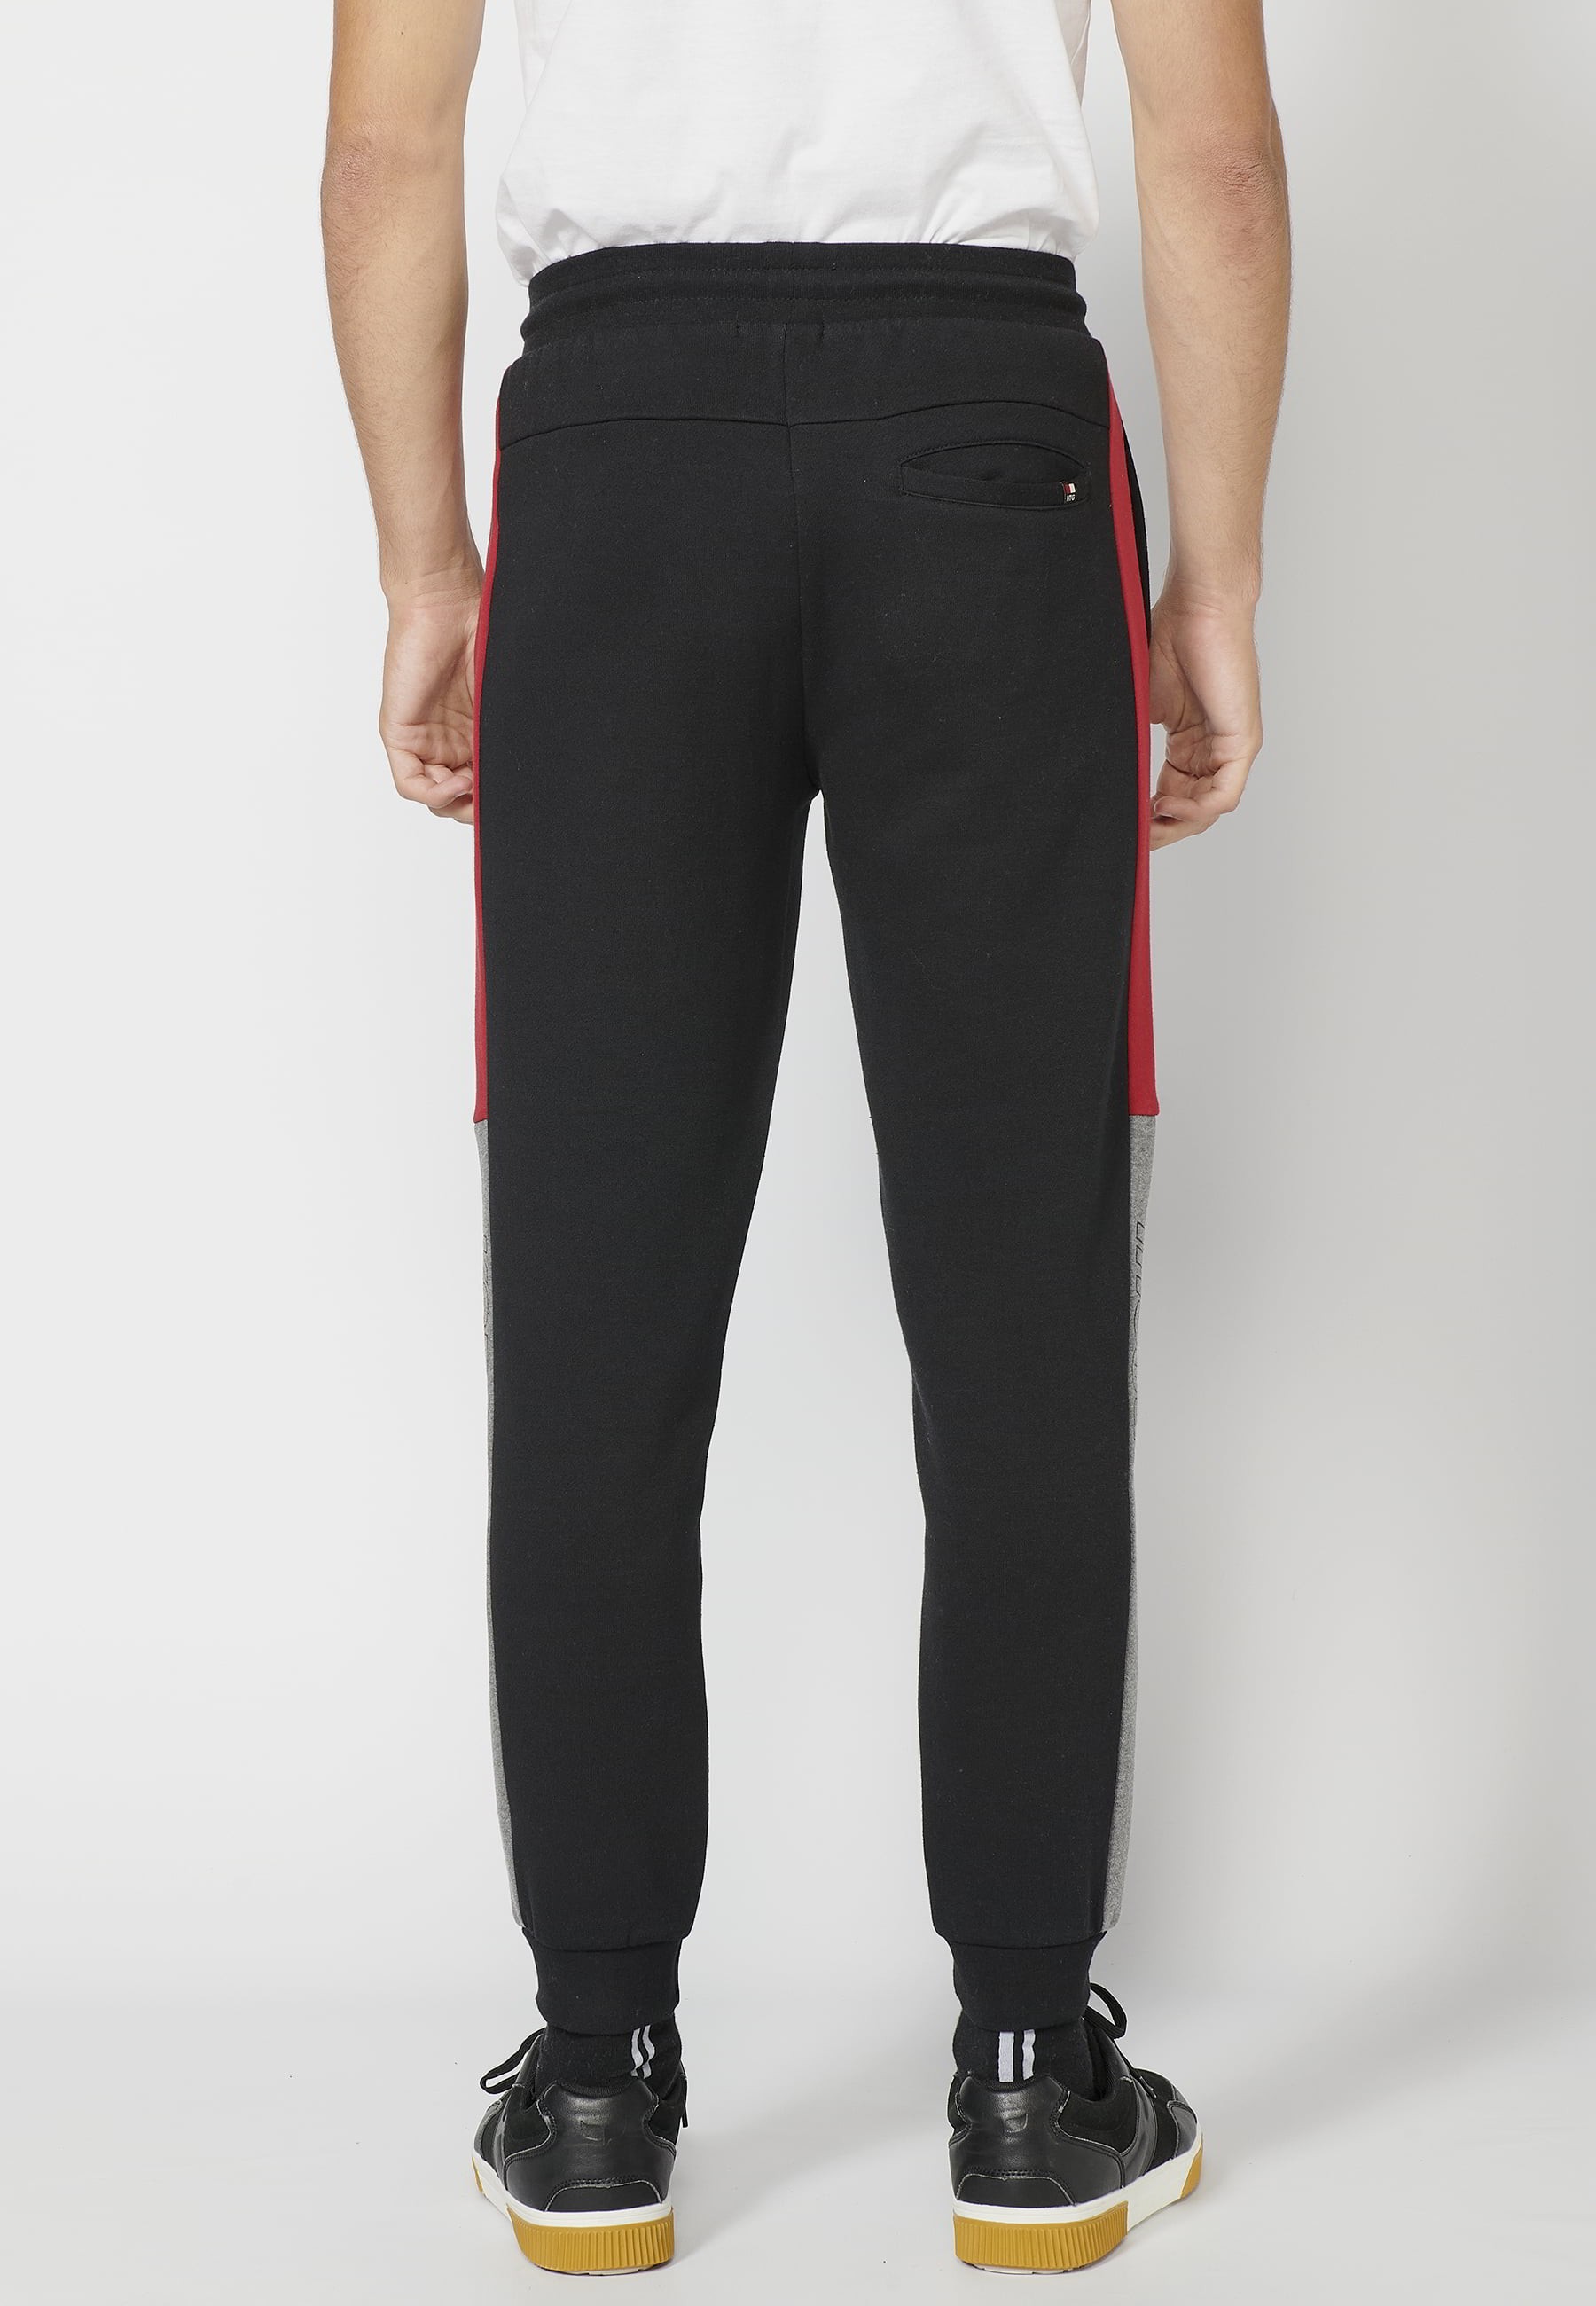 Pantalón Deportivo largo jogger con cintura elástica ajustable, detalle lateral, color negro para Hombre